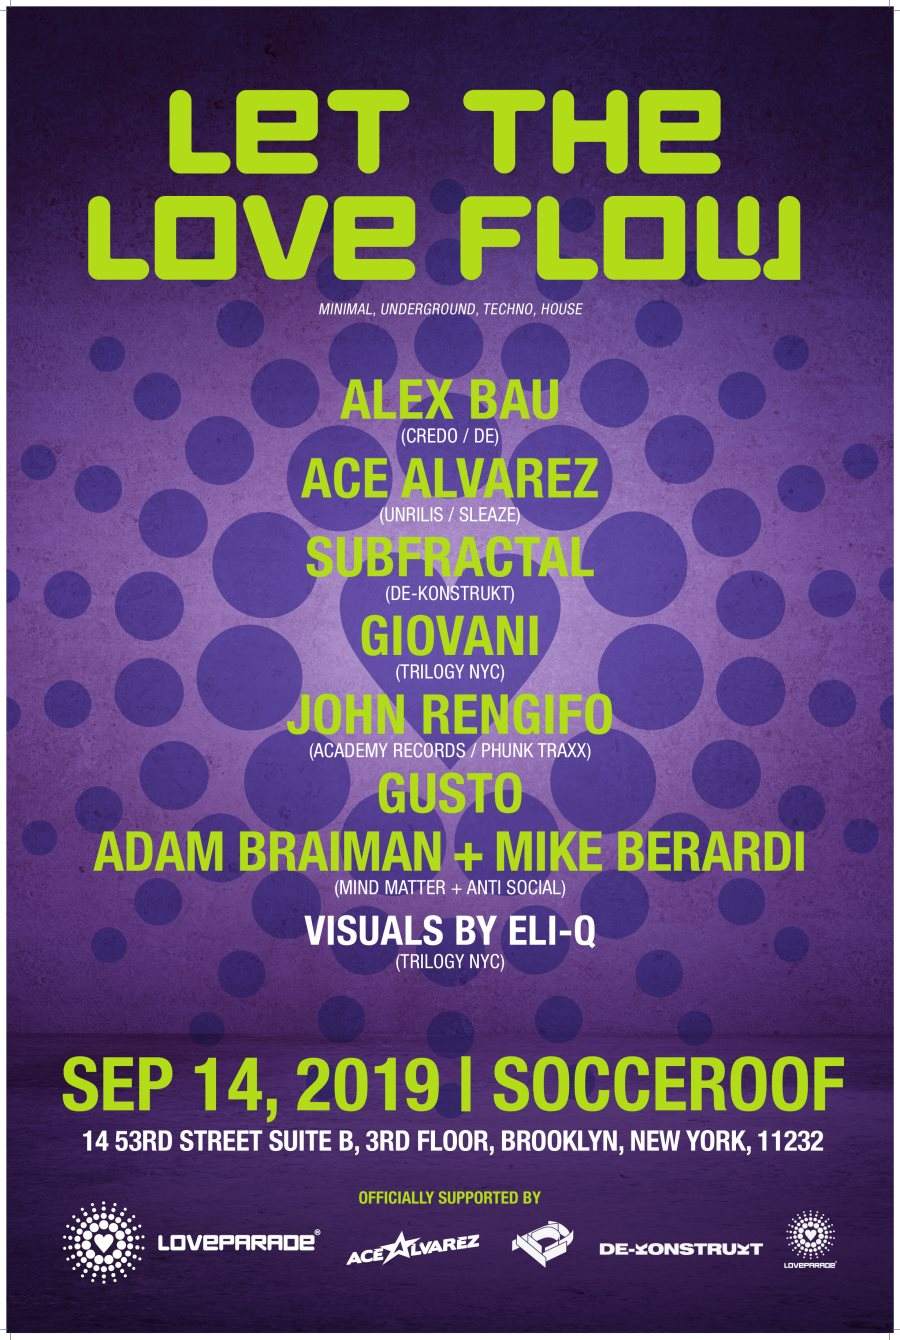 Let the Love Flow NYC - Ft. Alex Bau, Ace Alvarez, Subfratcal - フライヤー表